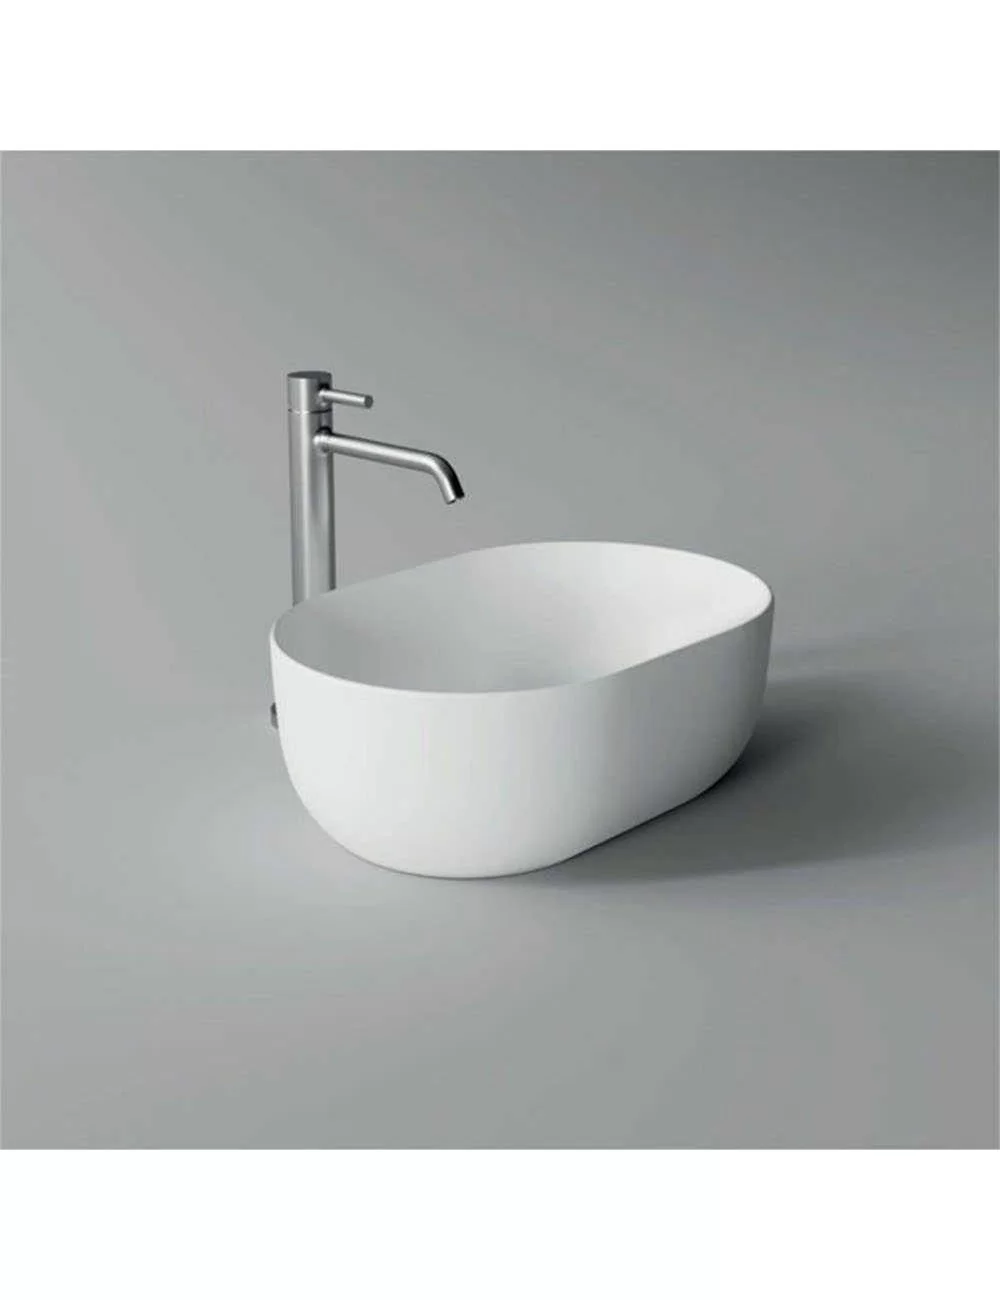 Oval white countertop washbasin small Unica Alice Ceramica